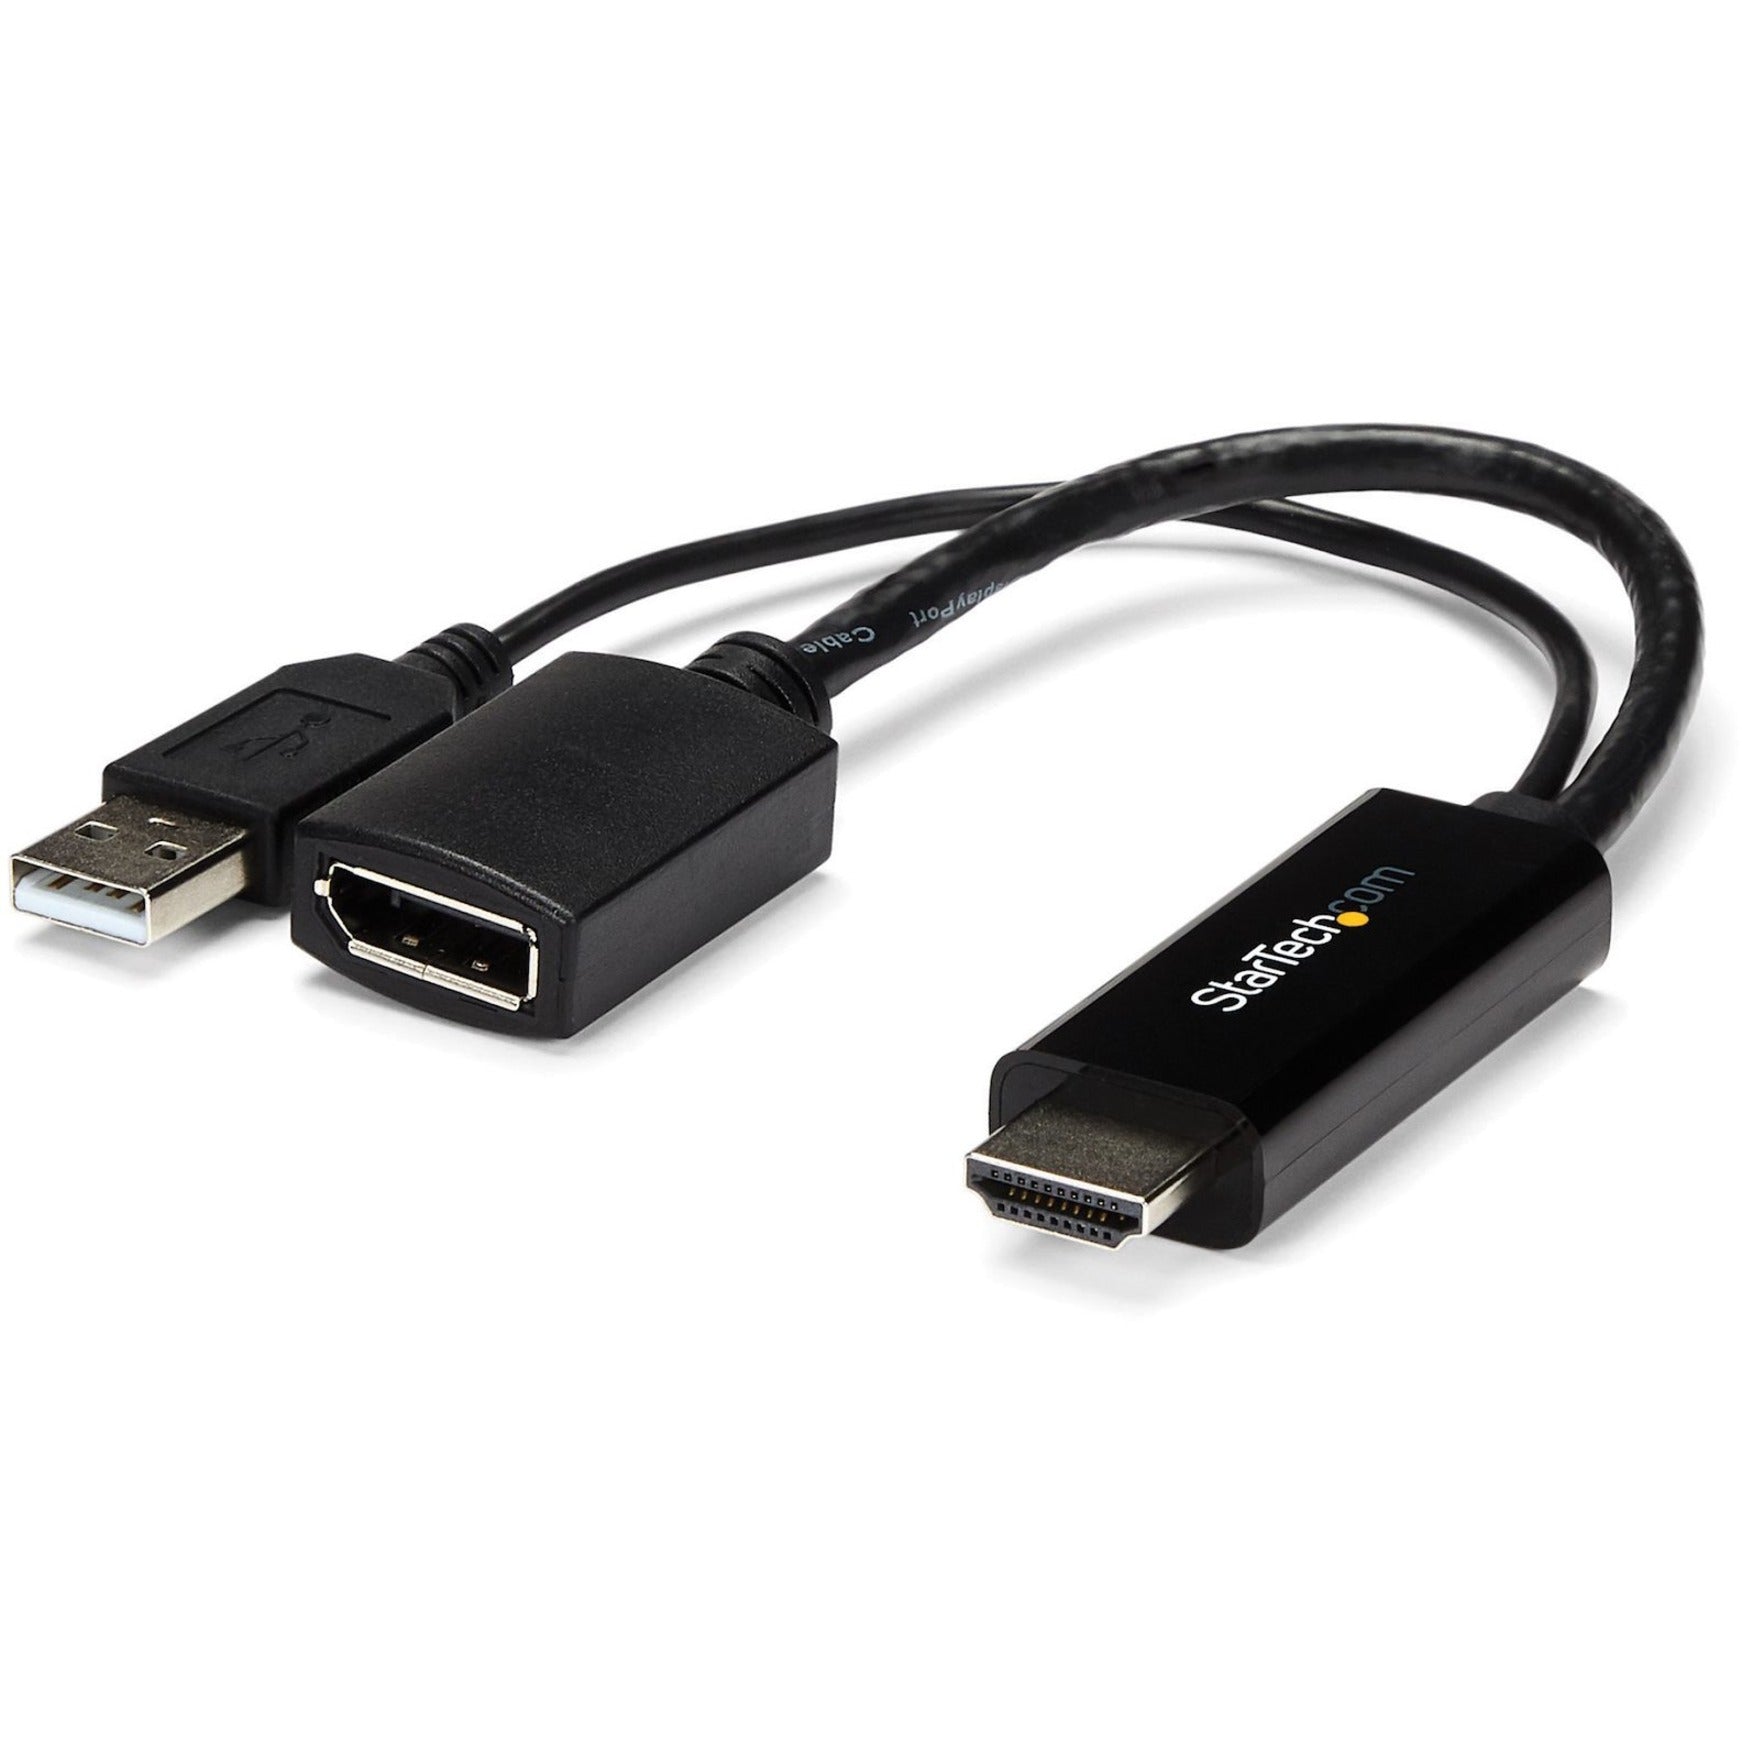 Convertidor HDMI a DisplayPort de StarTech.com - Adaptador de HDMI a DP con Alimentación USB - 4K Adaptador de Video Plug-and-Play Fácil